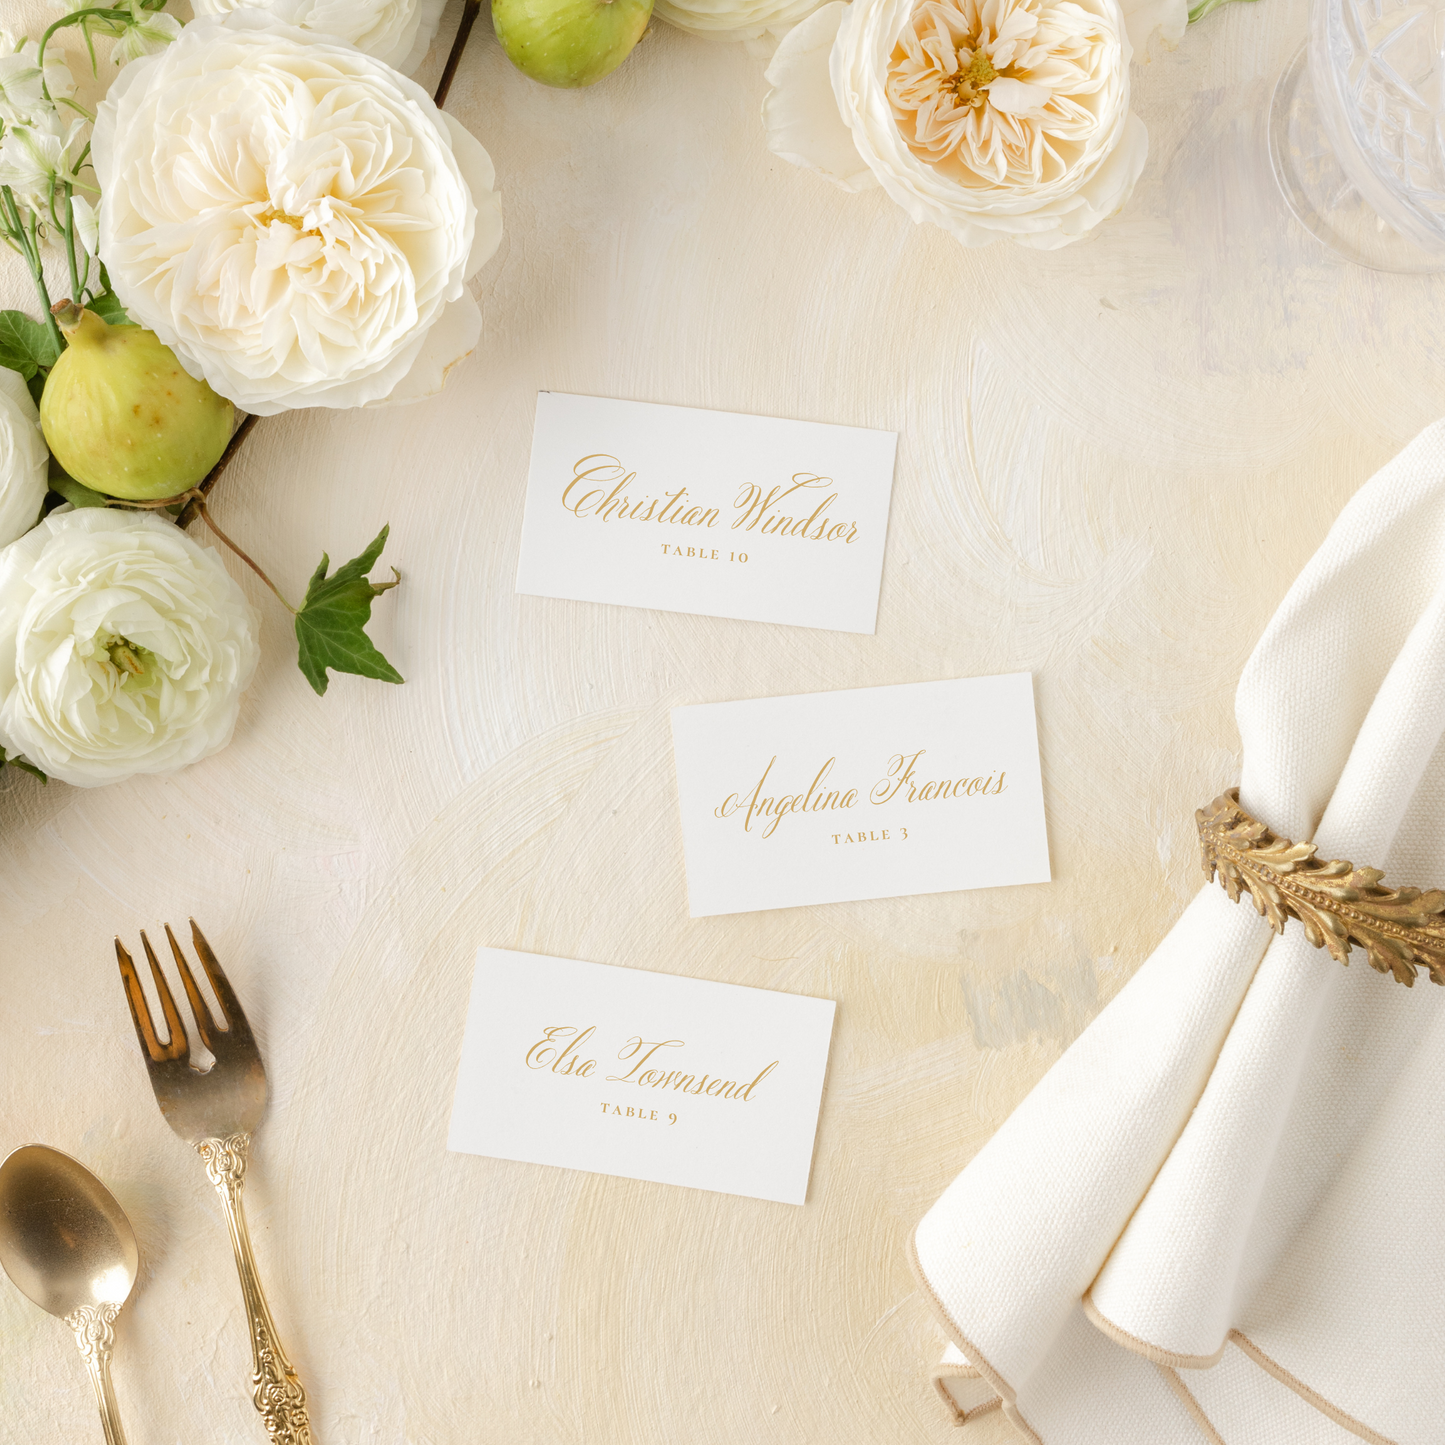 Catholic Wedding Escort Cards, Calligraphy-style